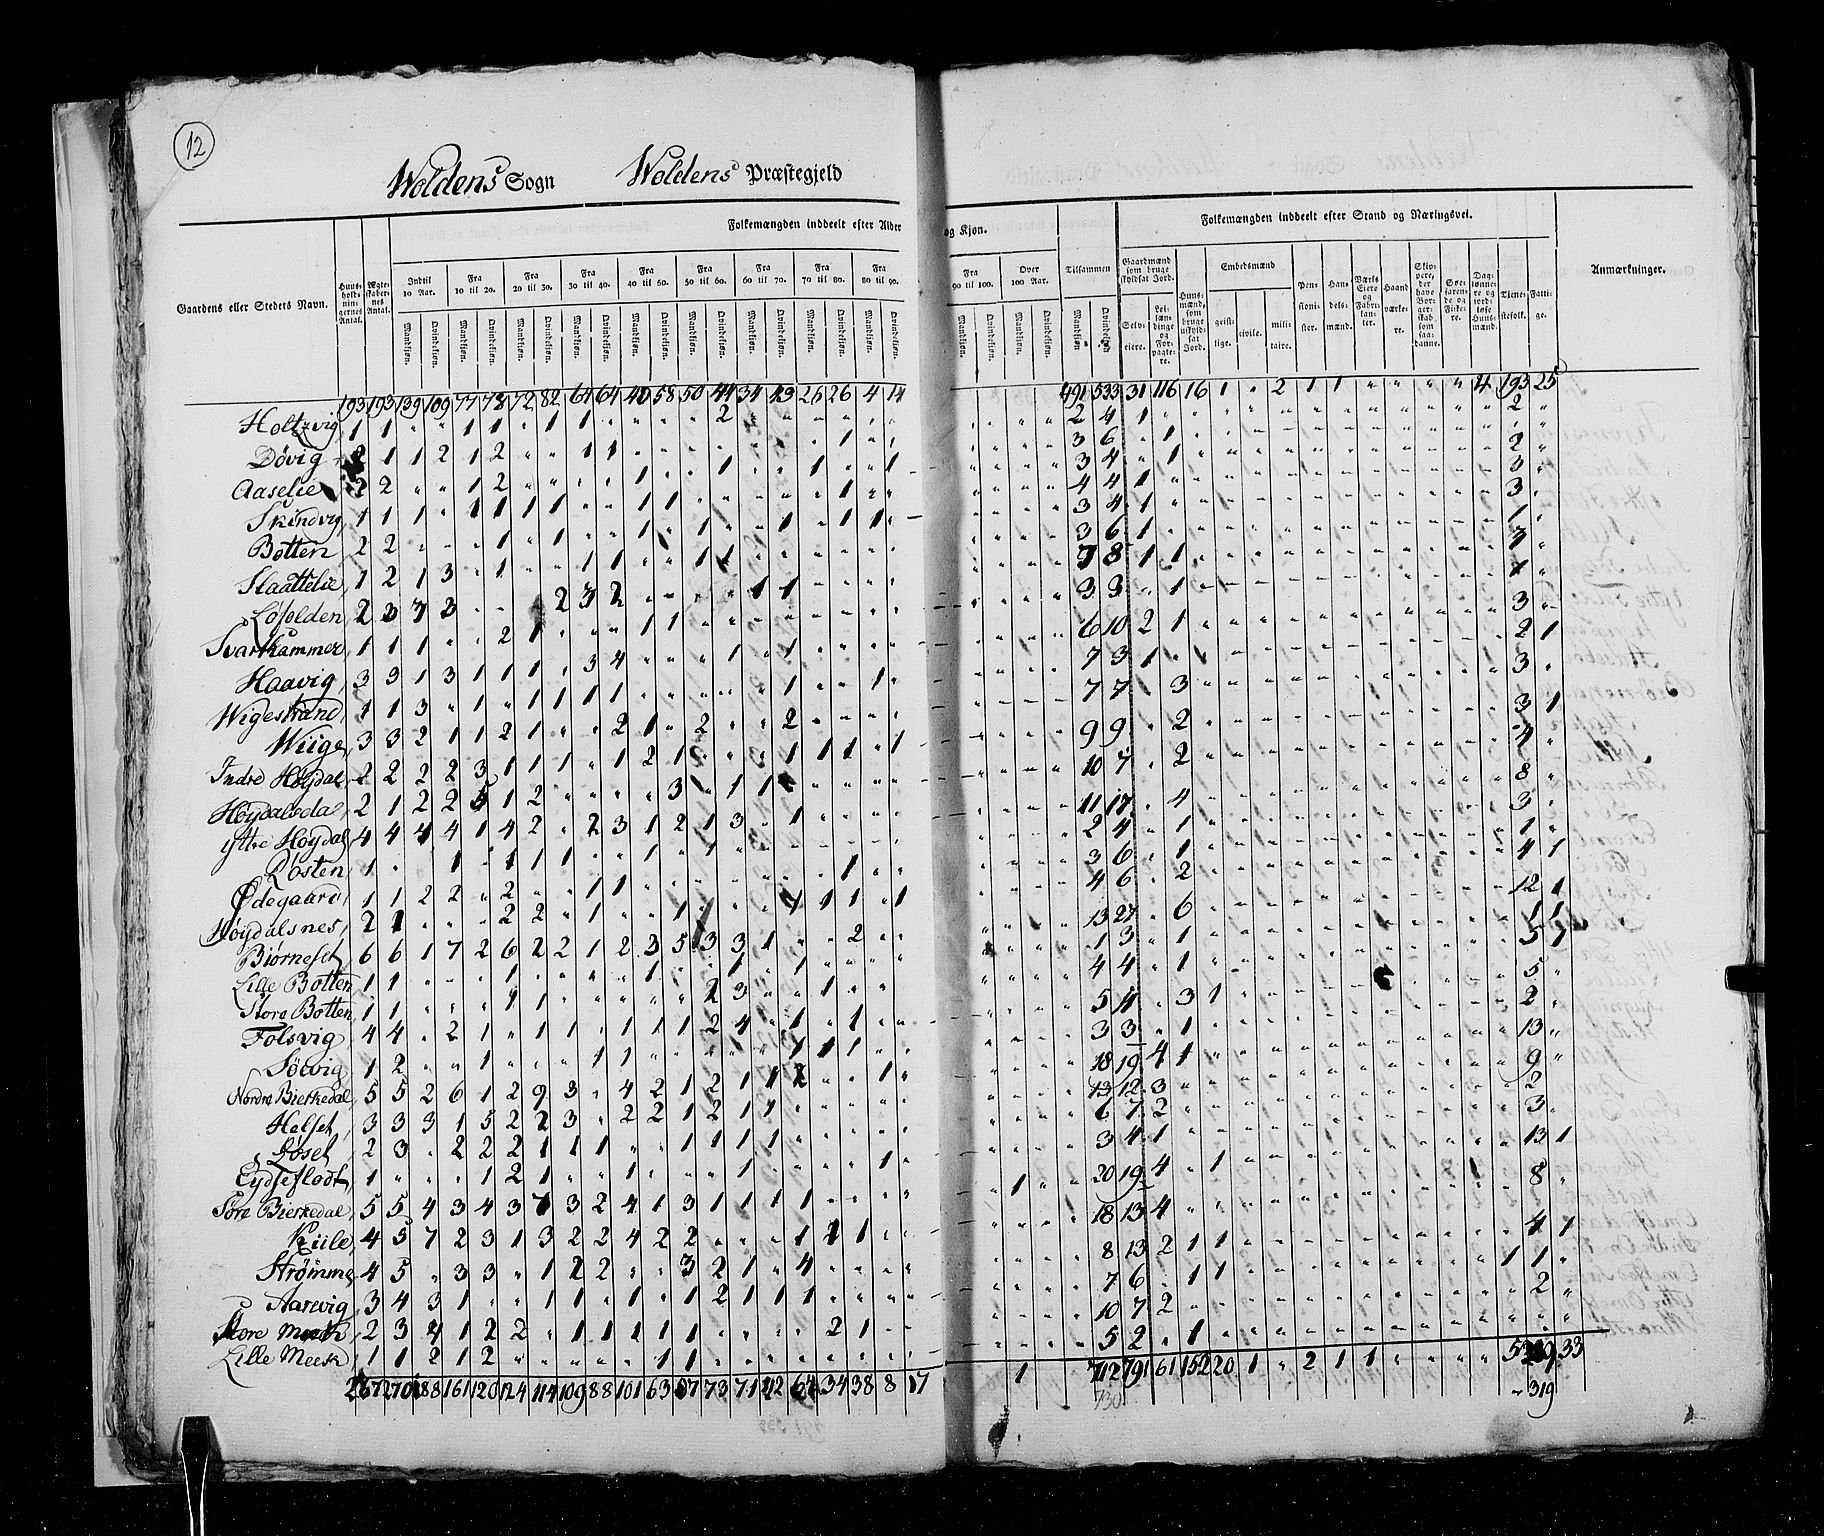 RA, Census 1825, vol. 15: Romsdal amt, 1825, p. 12